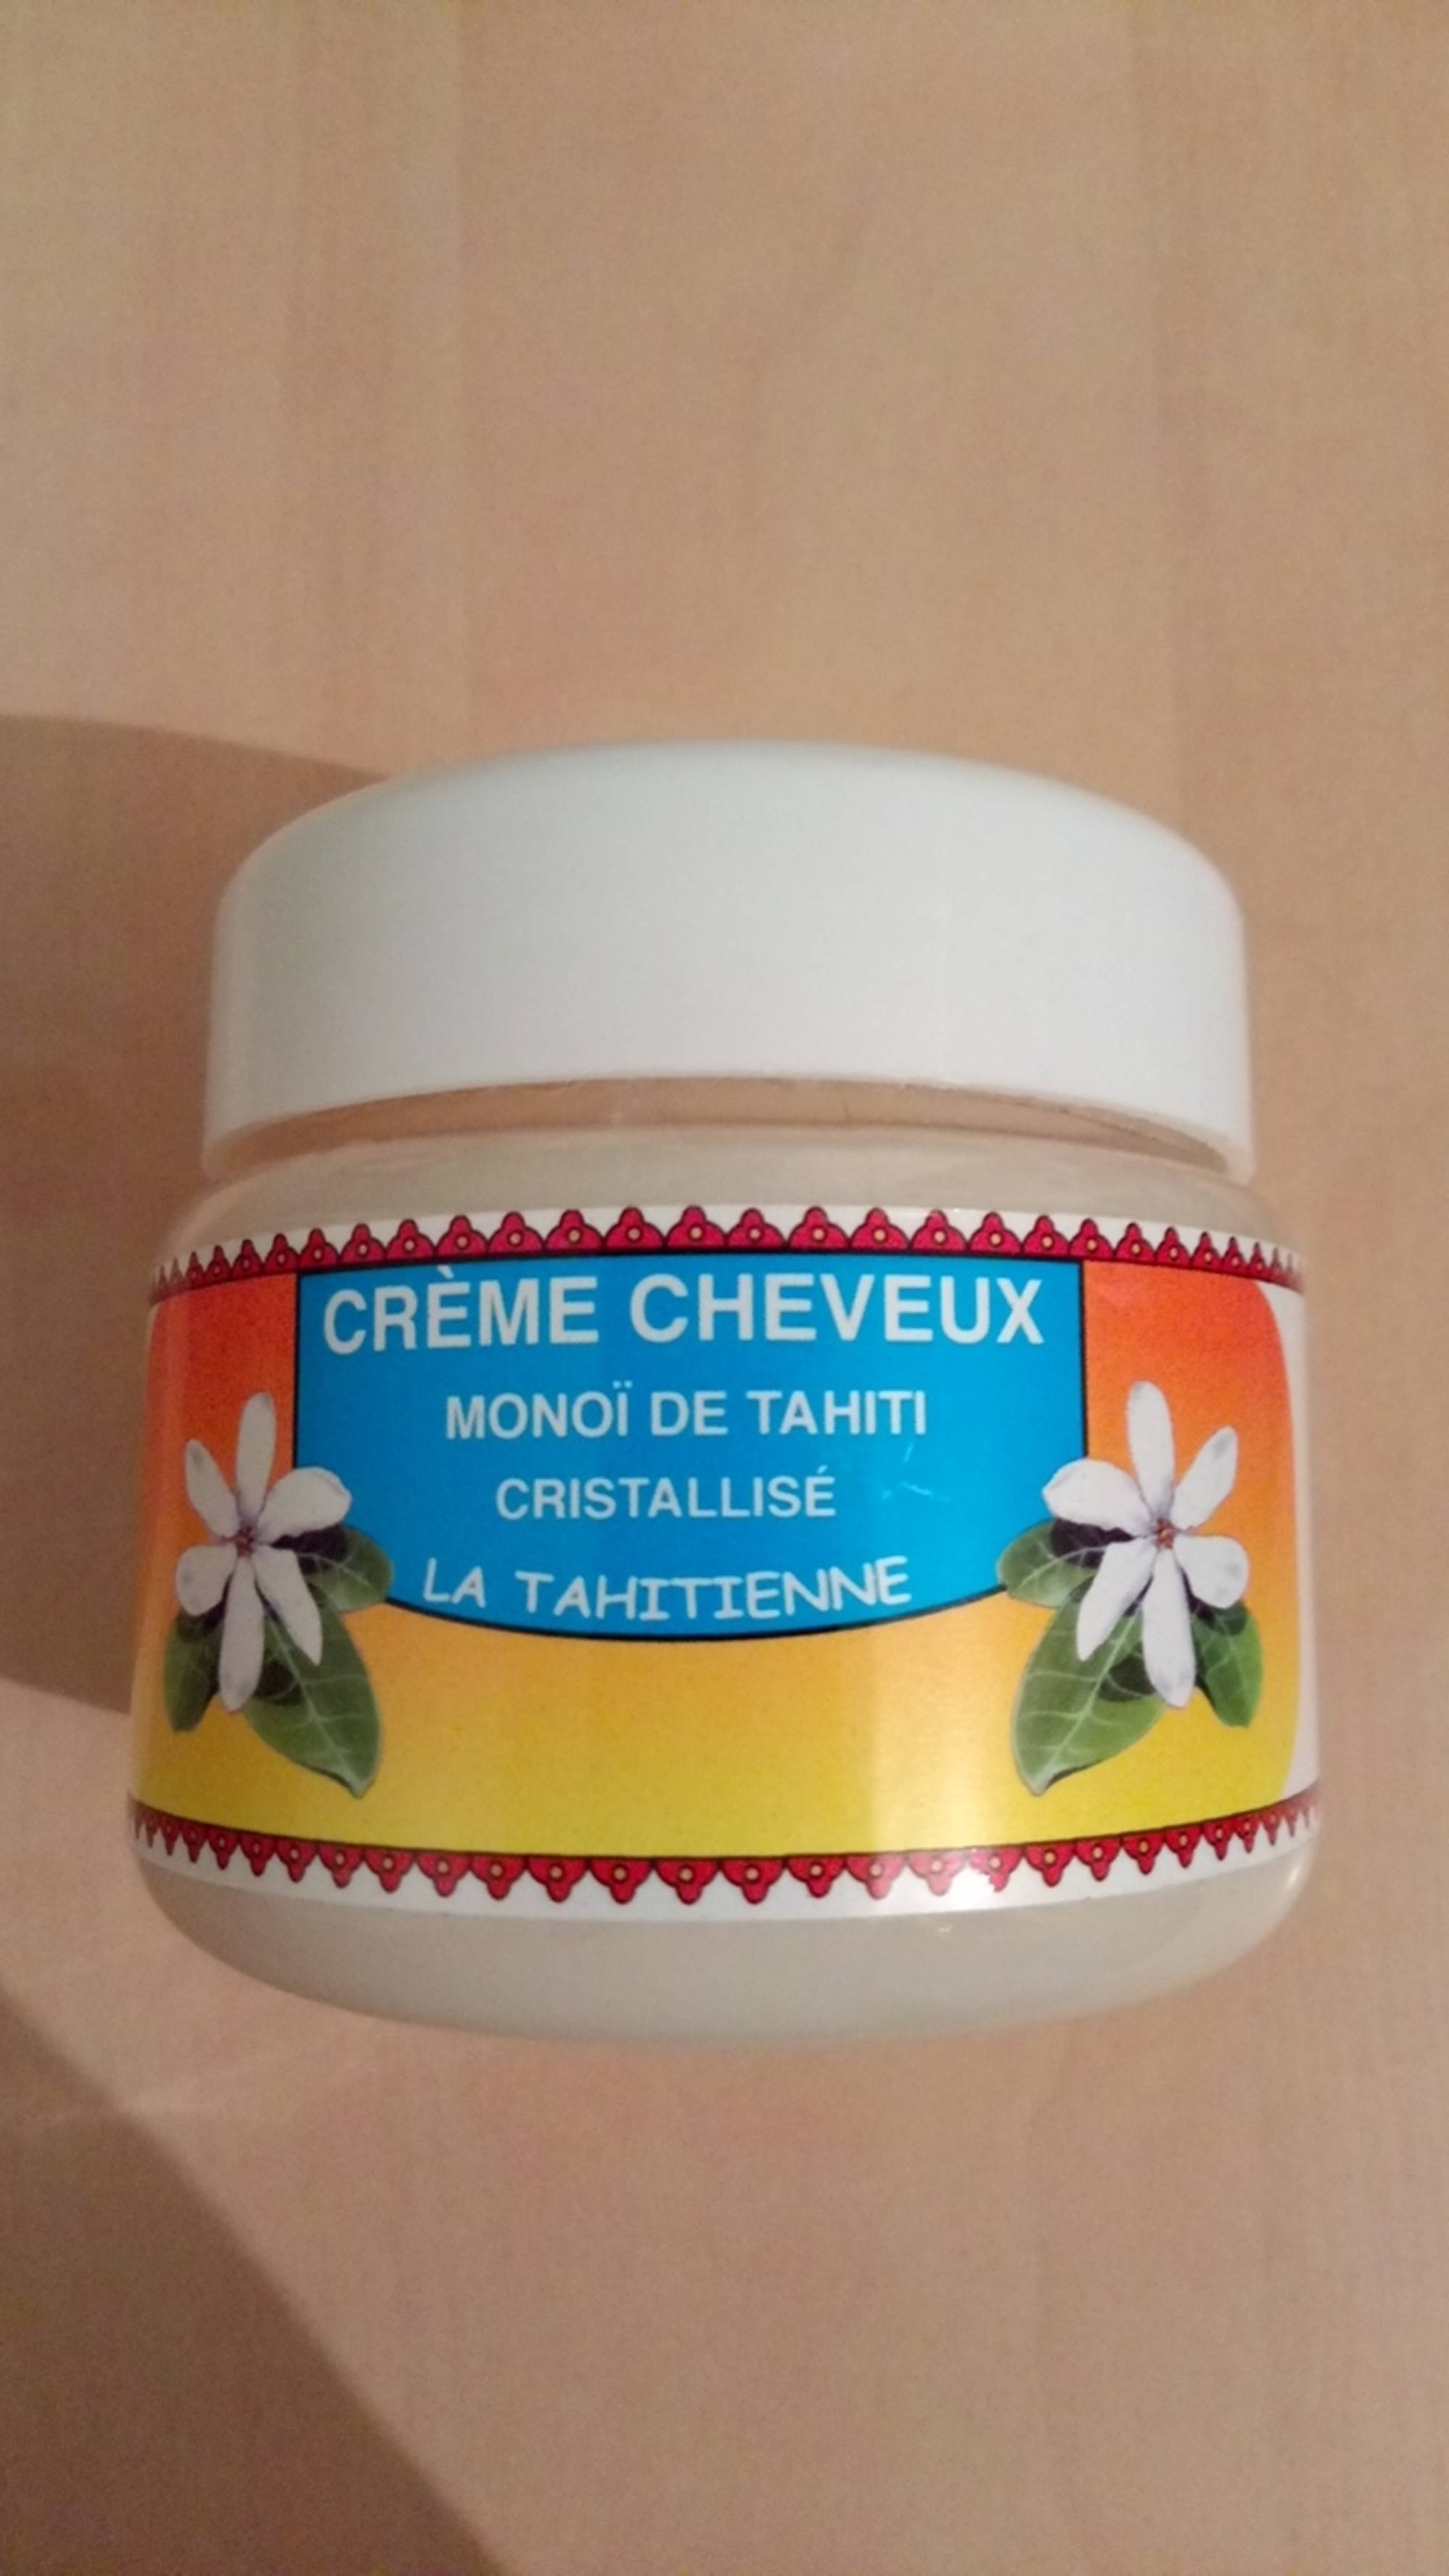 LA TAHITIENNE - Monoï de Tahiti cristallisé - Crème cheveux